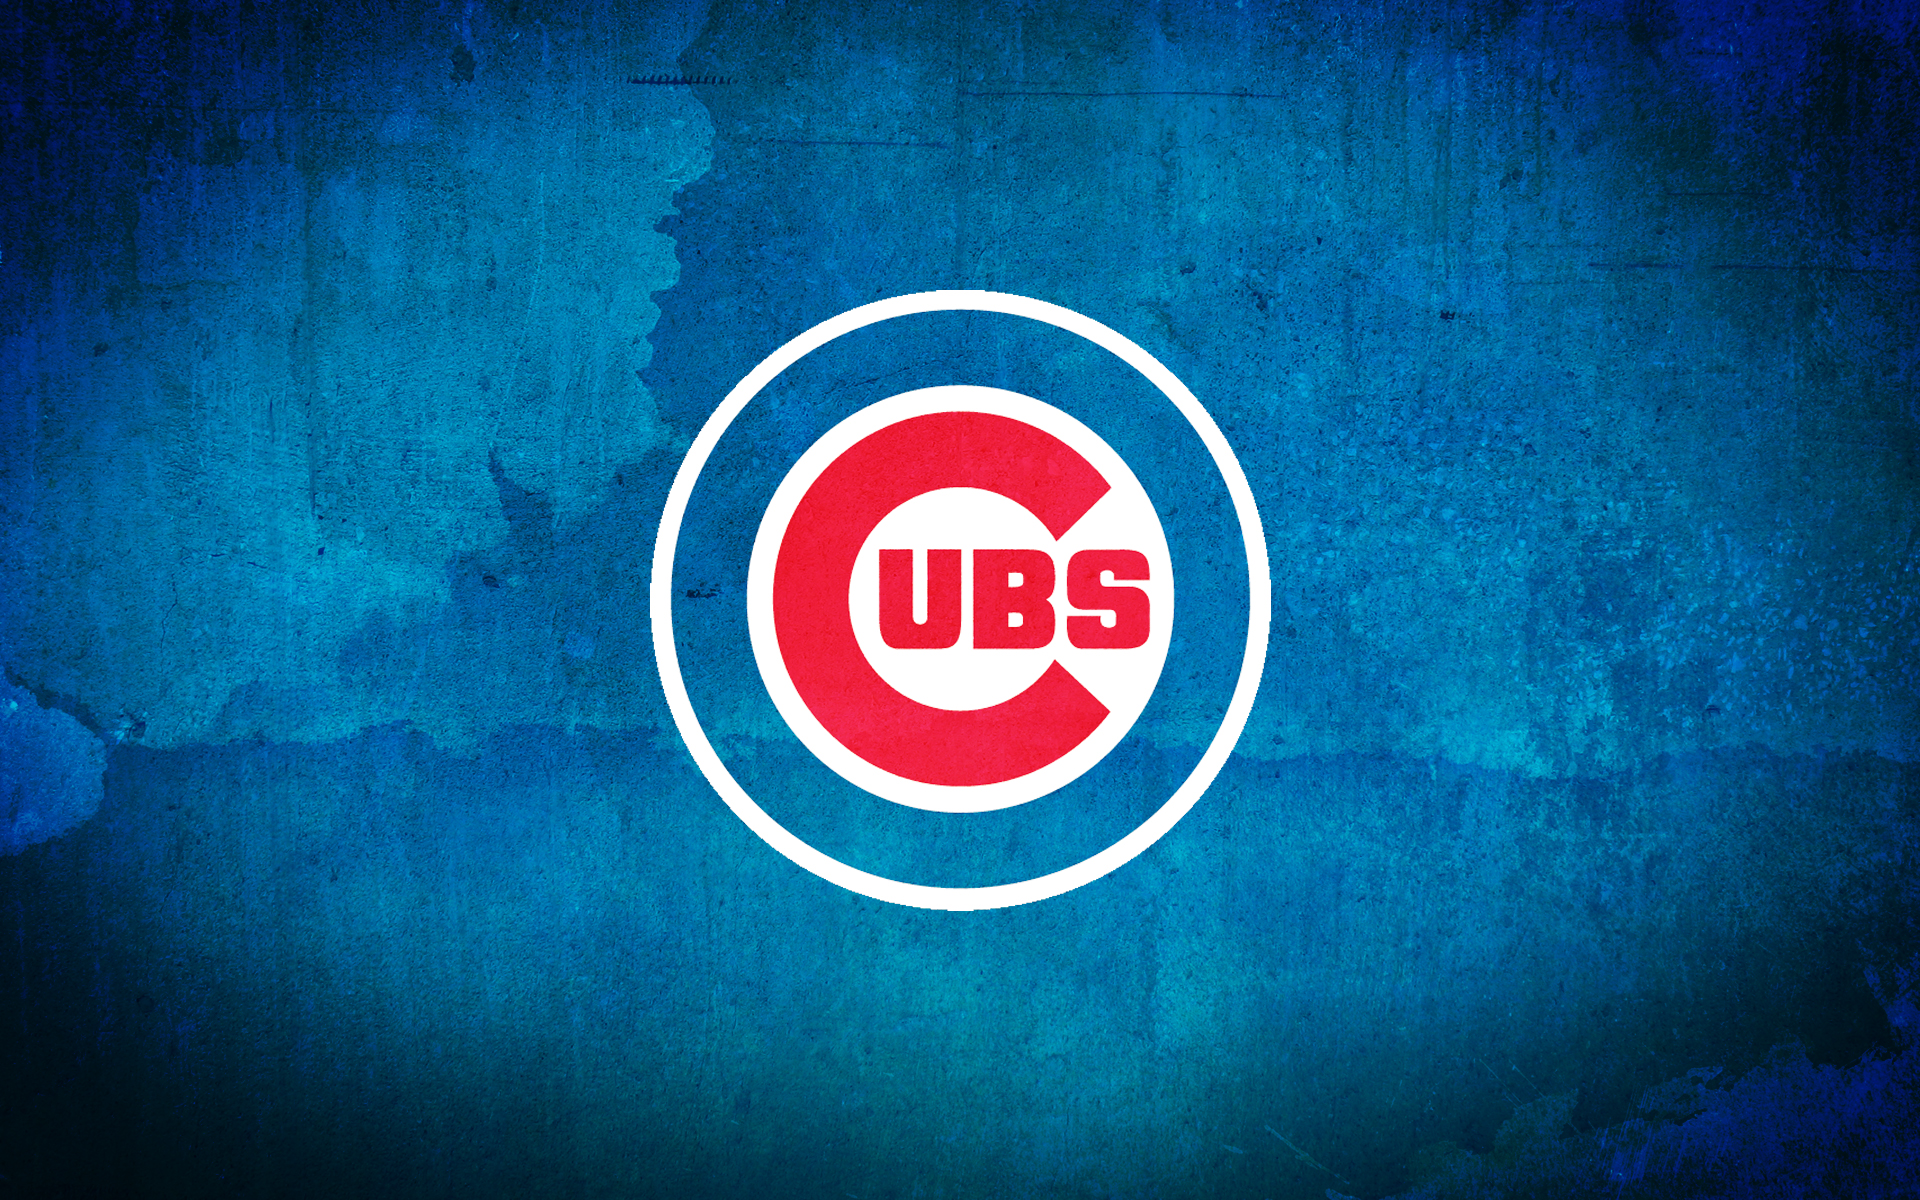 Chicago Cubs Fondos de pantalla Fondos de escritorio 1920x1200 ID